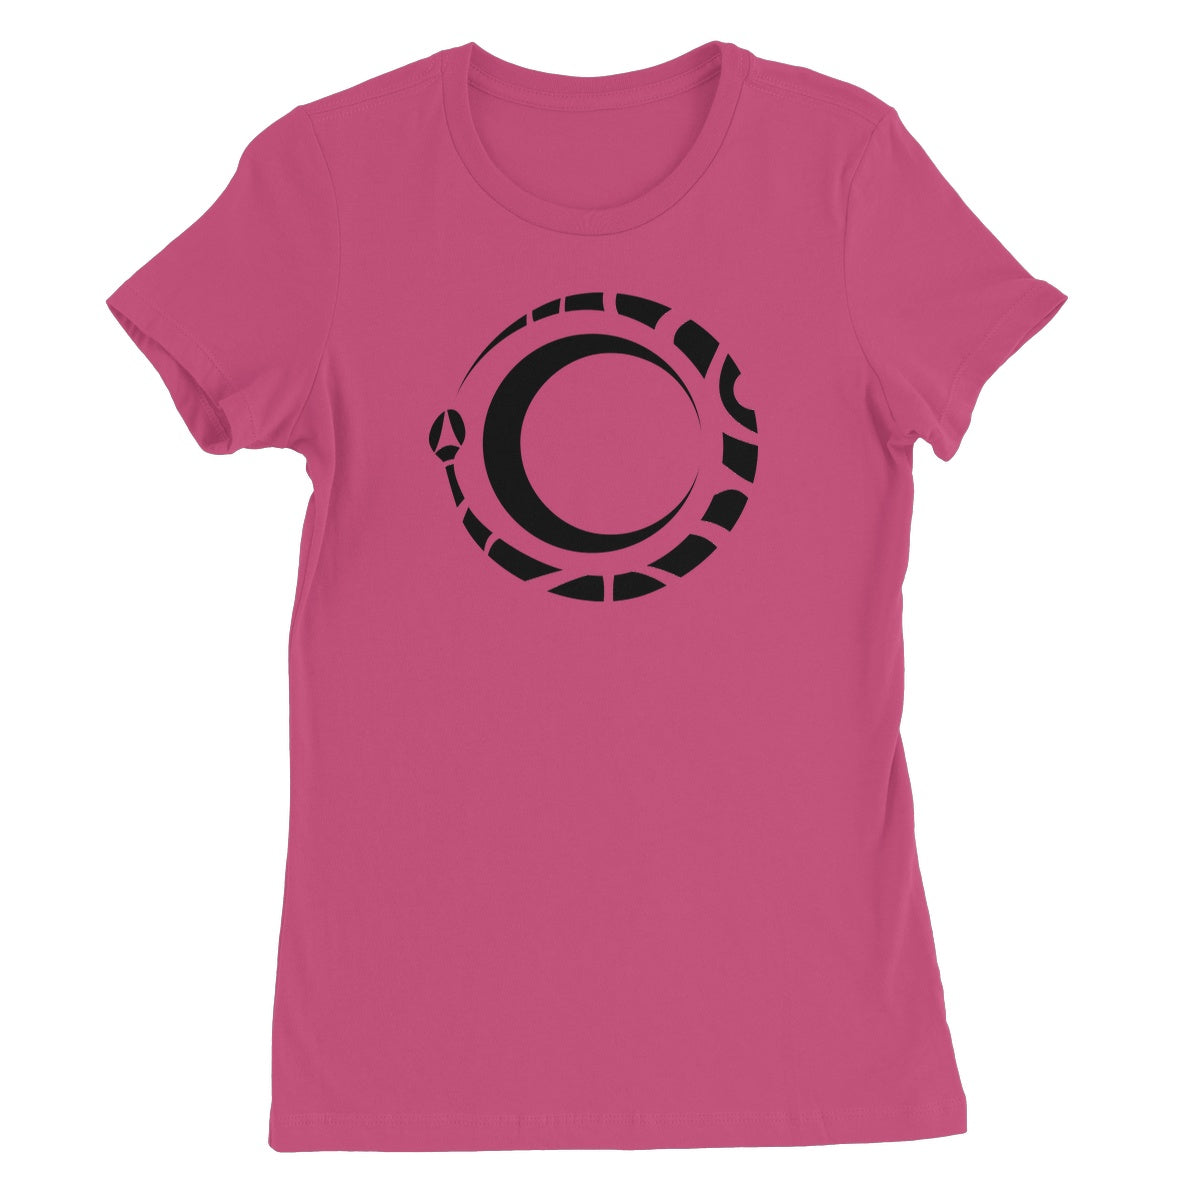 Curly Spiral Snake Women's T-Shirt